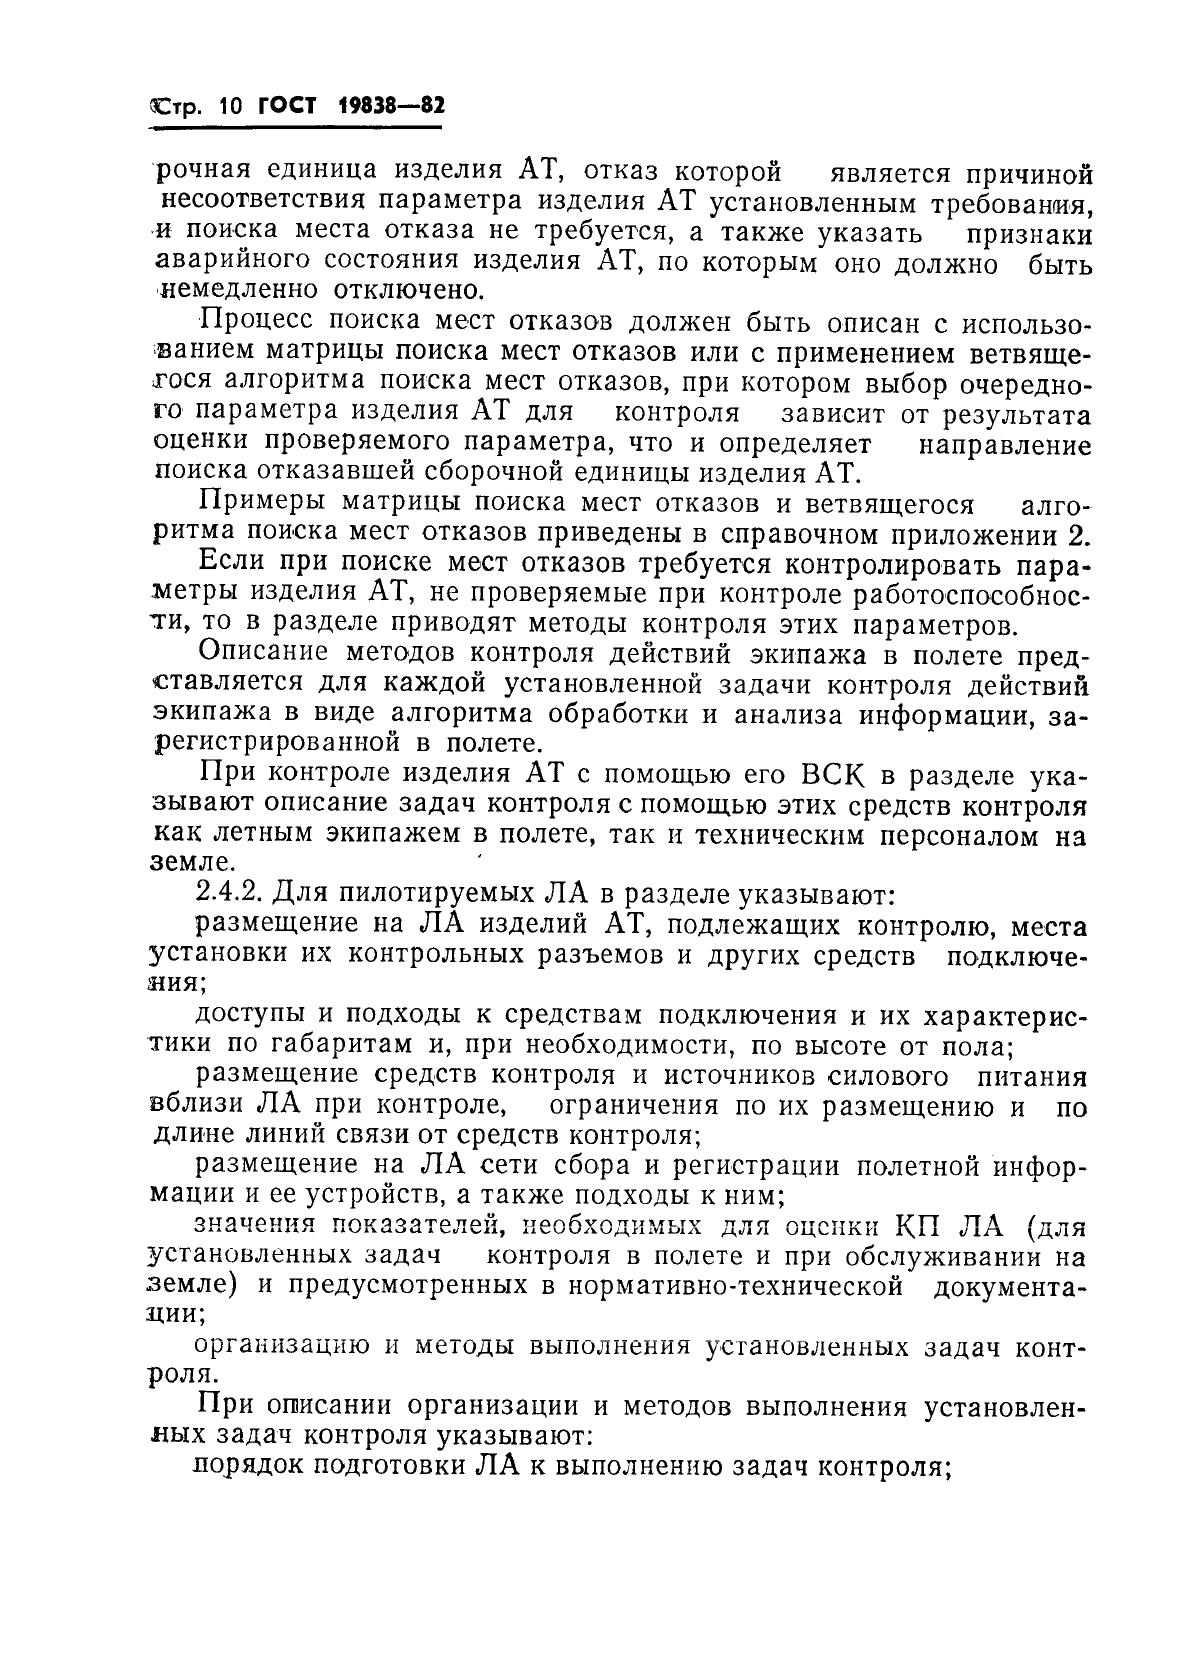 ГОСТ 19838-82 Характеристика контролепригодности изделий авиационной техники. Правила изложения и оформления (фото 11 из 21)